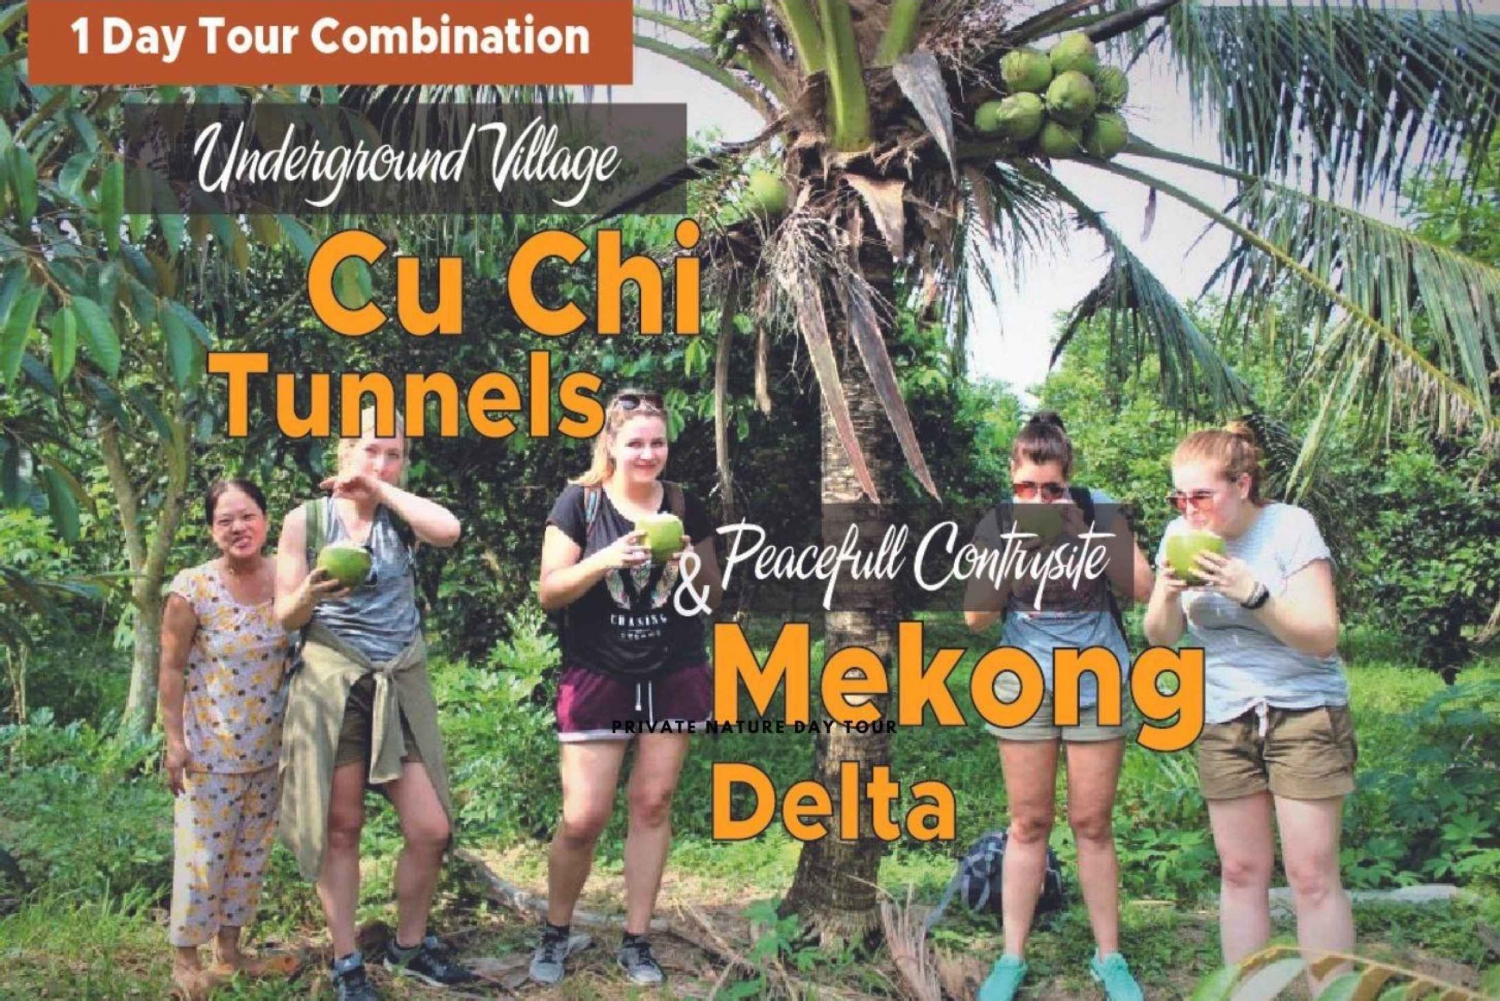 Excursão de 1 dia aos túneis de Cu Chi e ao Delta do Mekong